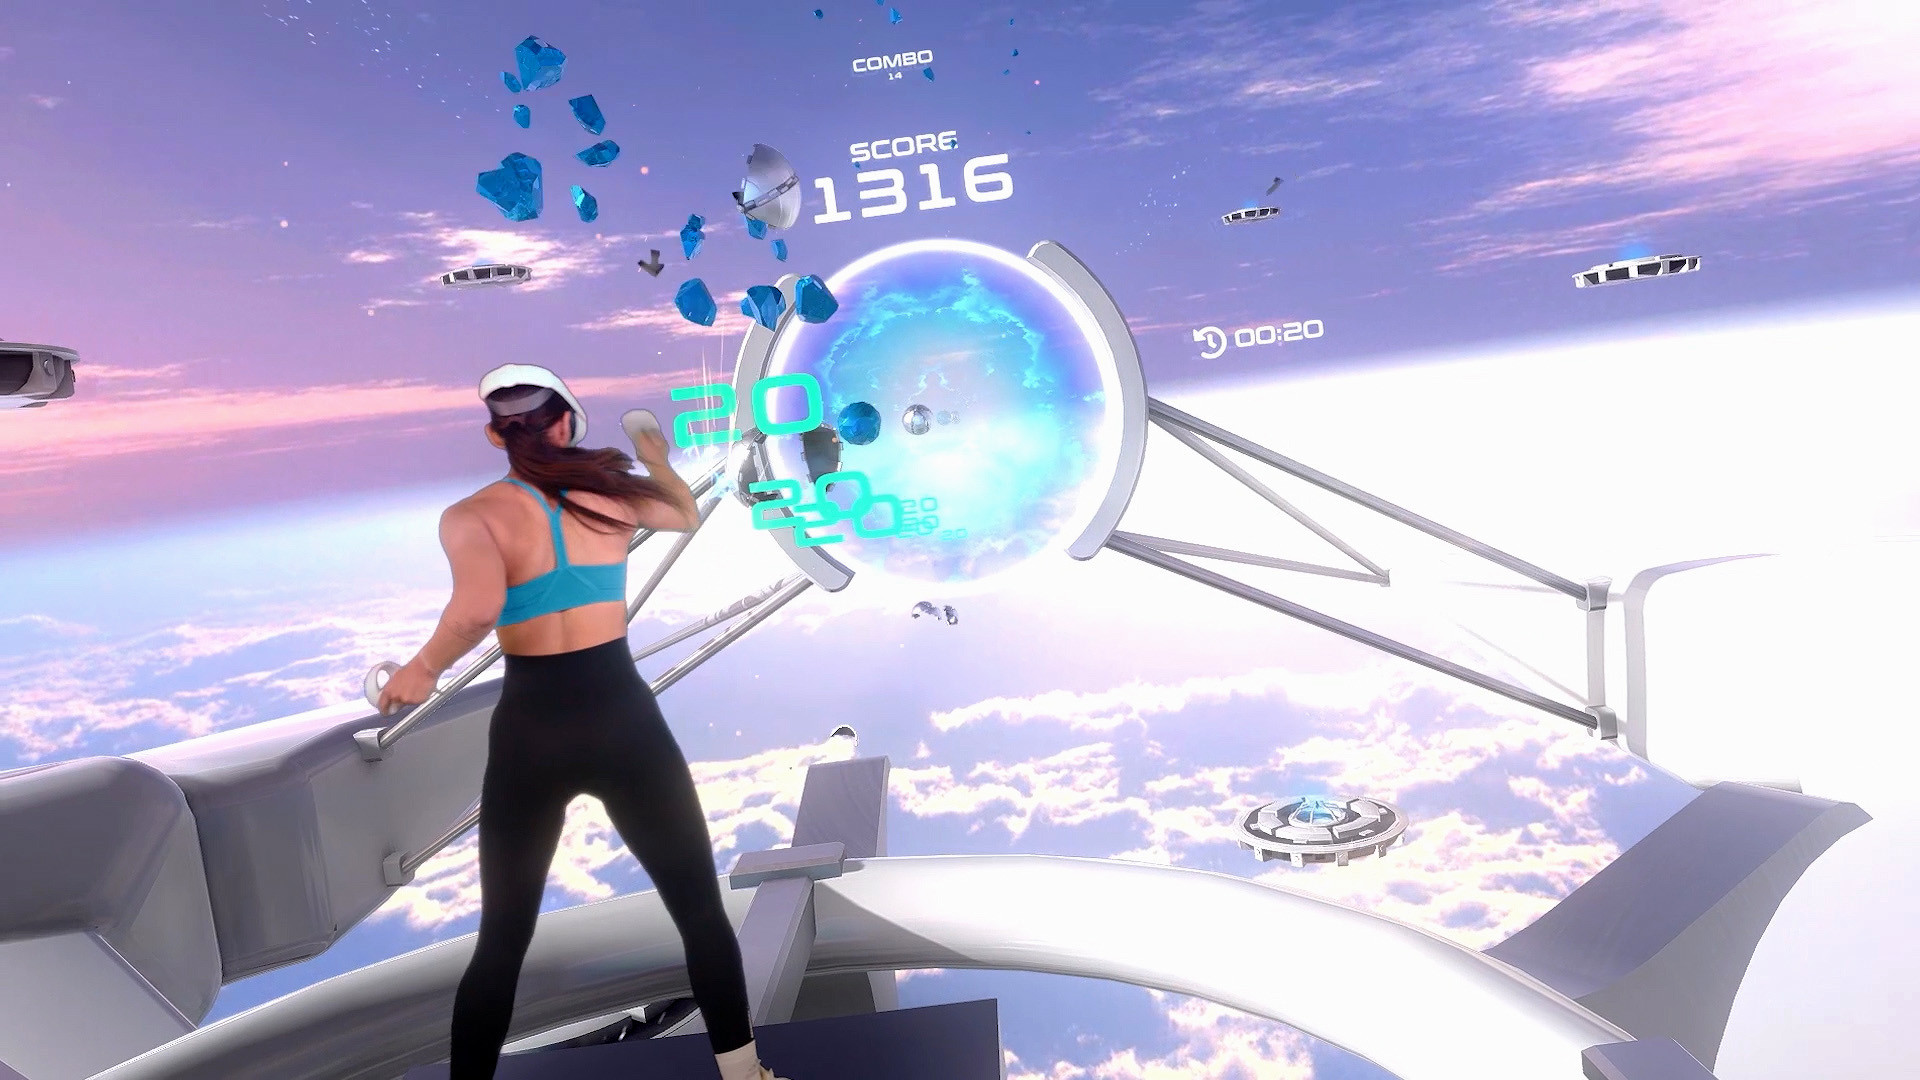 图片[6]VR玩吧官网|VR游戏下载网站|Quest 2 3一体机游戏|VR游戏资源中文汉化平台|Pico Neo3 4|Meta Quest 2 3|HTC VIVE|Oculus Rift|Valve Index|Pico VR|游戏下载中心Oculus Quest 游戏《节奏健身VR》Power Beats VR（高速下载）VR玩吧官网|VR游戏下载网站|Quest 2 3一体机游戏|VR游戏资源中文汉化平台|Pico Neo3 4|Meta Quest 2 3|HTC VIVE|Oculus Rift|Valve Index|Pico VR|游戏下载中心VR玩吧【VRwanba.com】汉化VR游戏官网